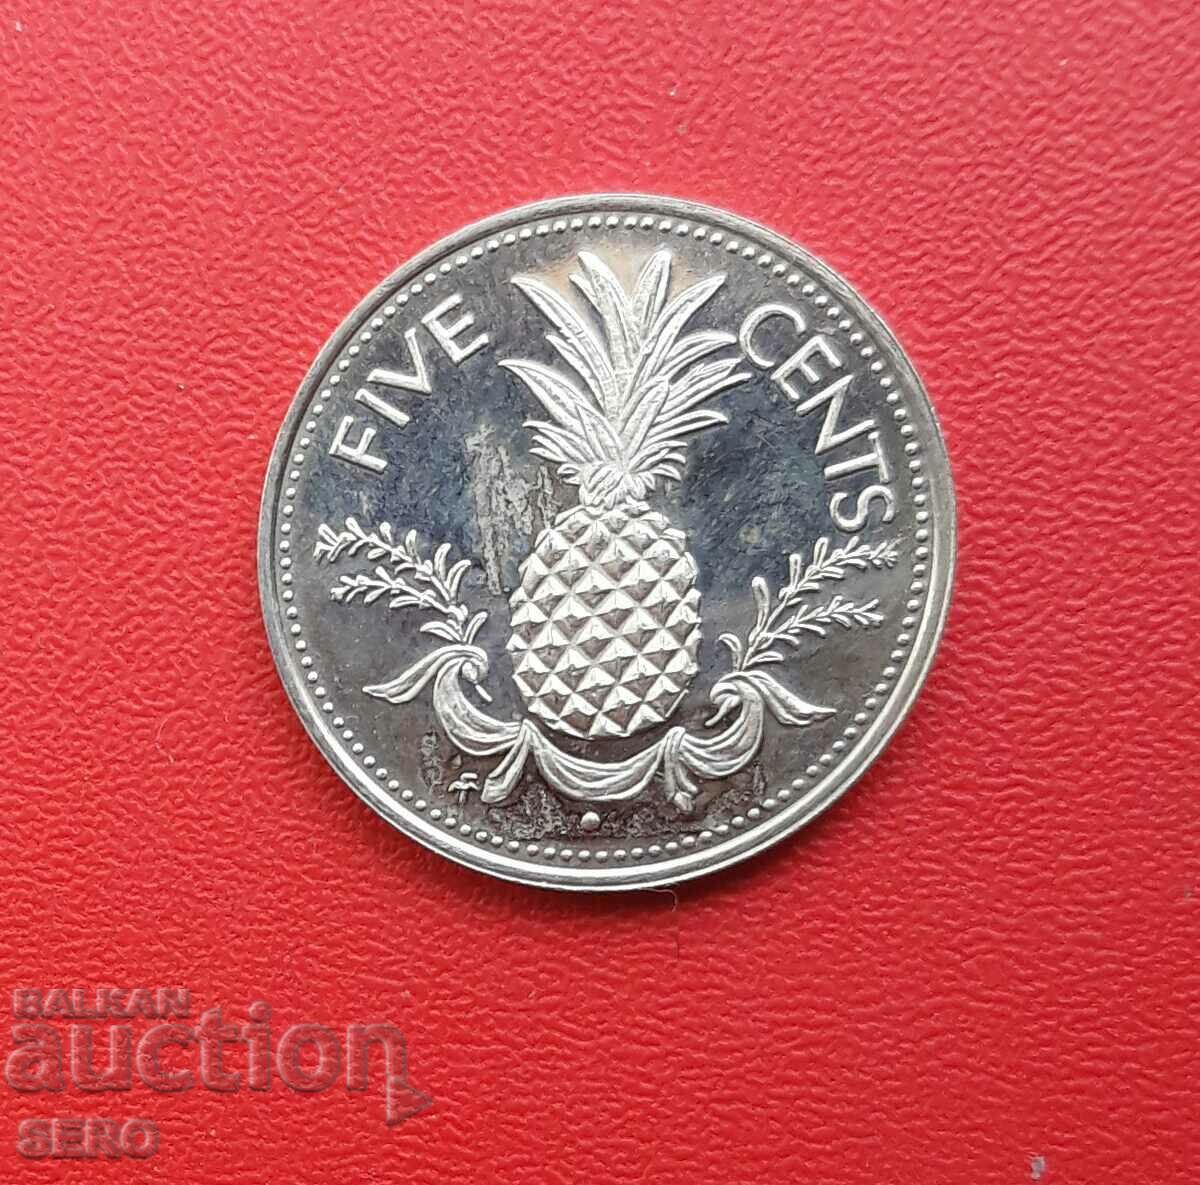 Bahamas-5 cents 1974-small circulation 23 pcs.